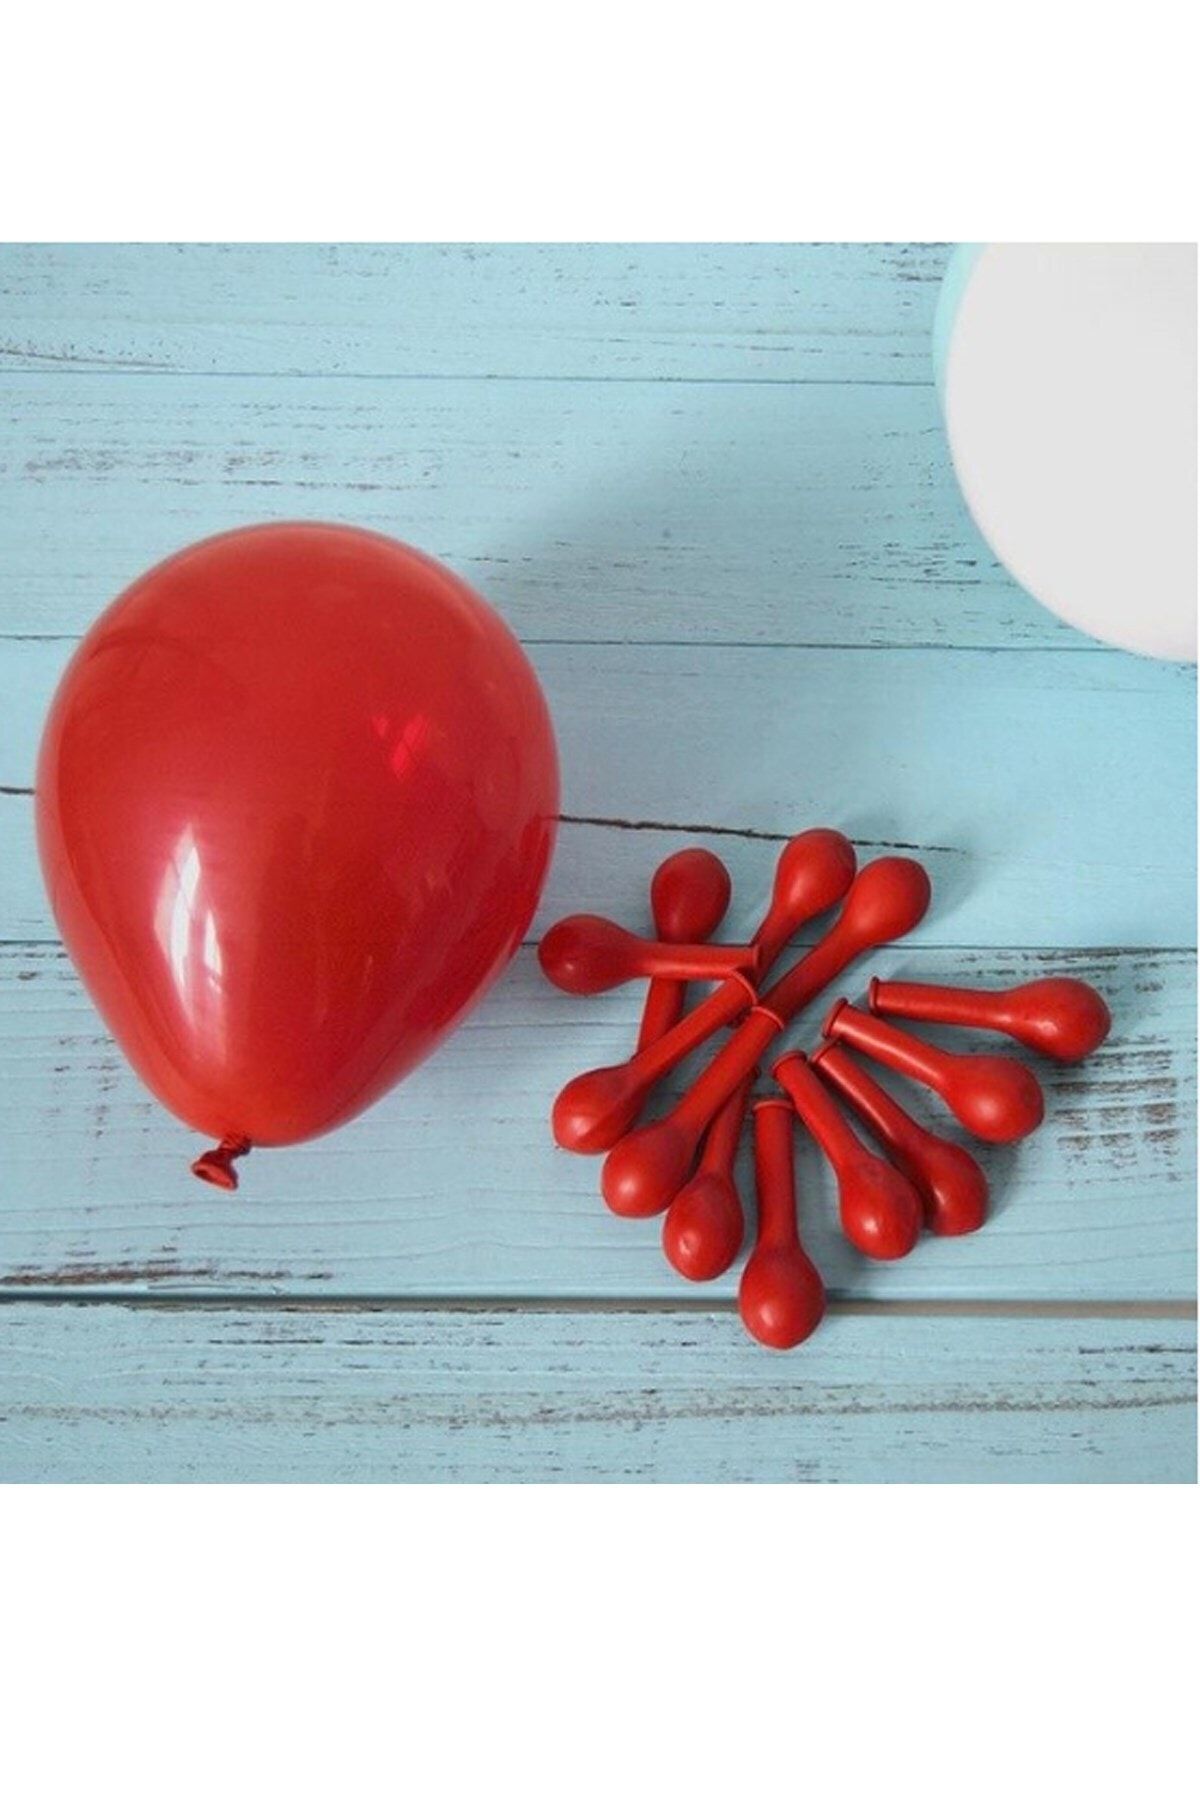 Купить воздушный шар 5. Воздушные шары резиновые. Шарики маленькие надувные. Латексные воздушные мини-шарики. Маленькие воздушные шары.